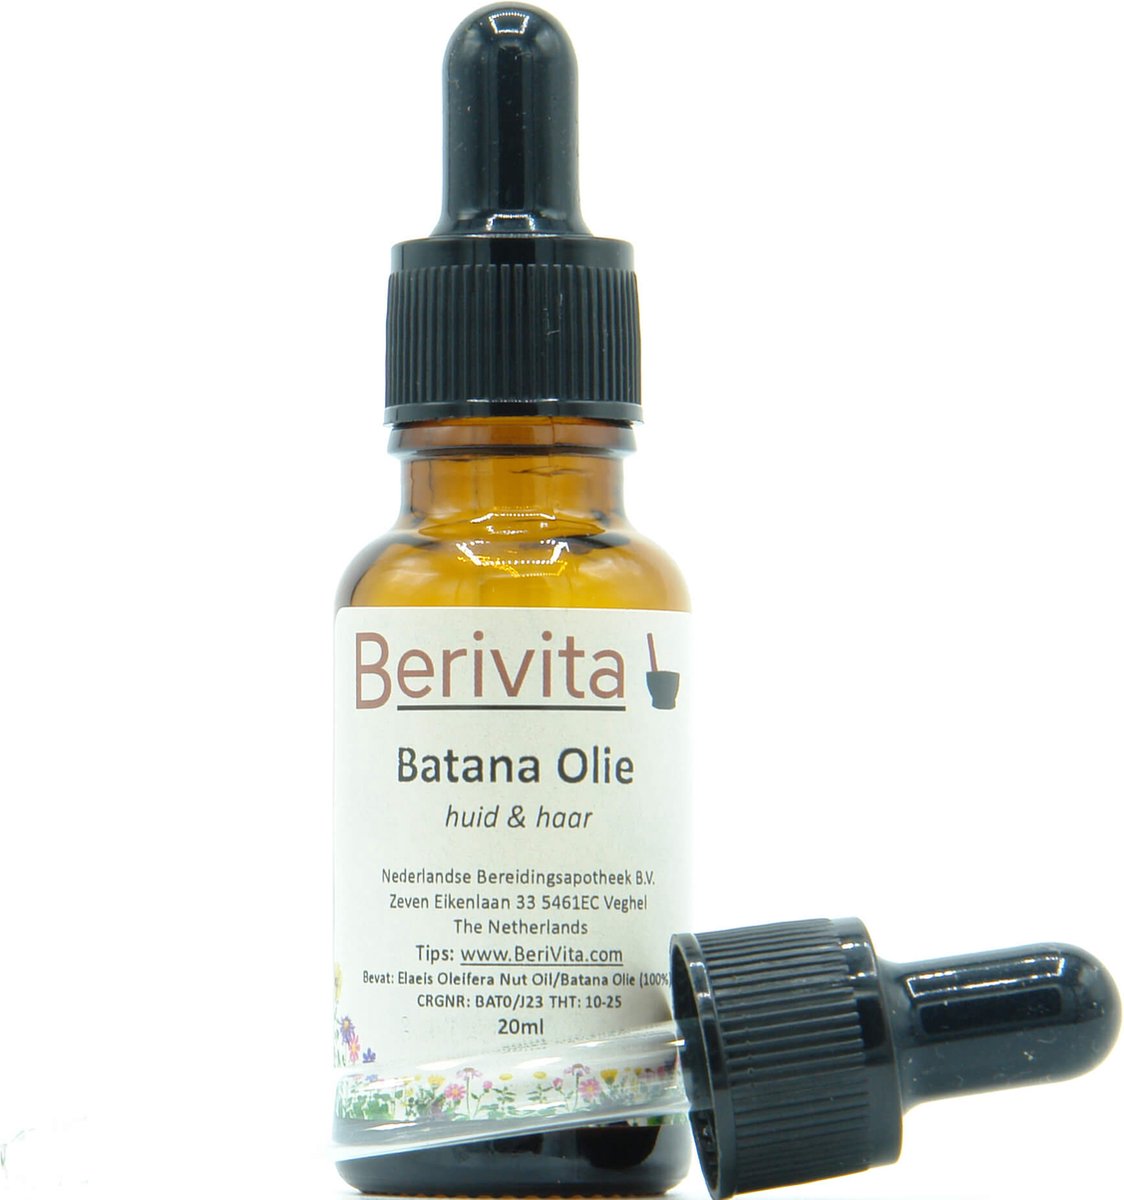 Batana Olie 20ml Pipetfles - 100% Pure Huid en Haarolie van Amerikaanse Palm, Elaeis Oleifera - Batana Oil Koudgeperst en Onbewerkt